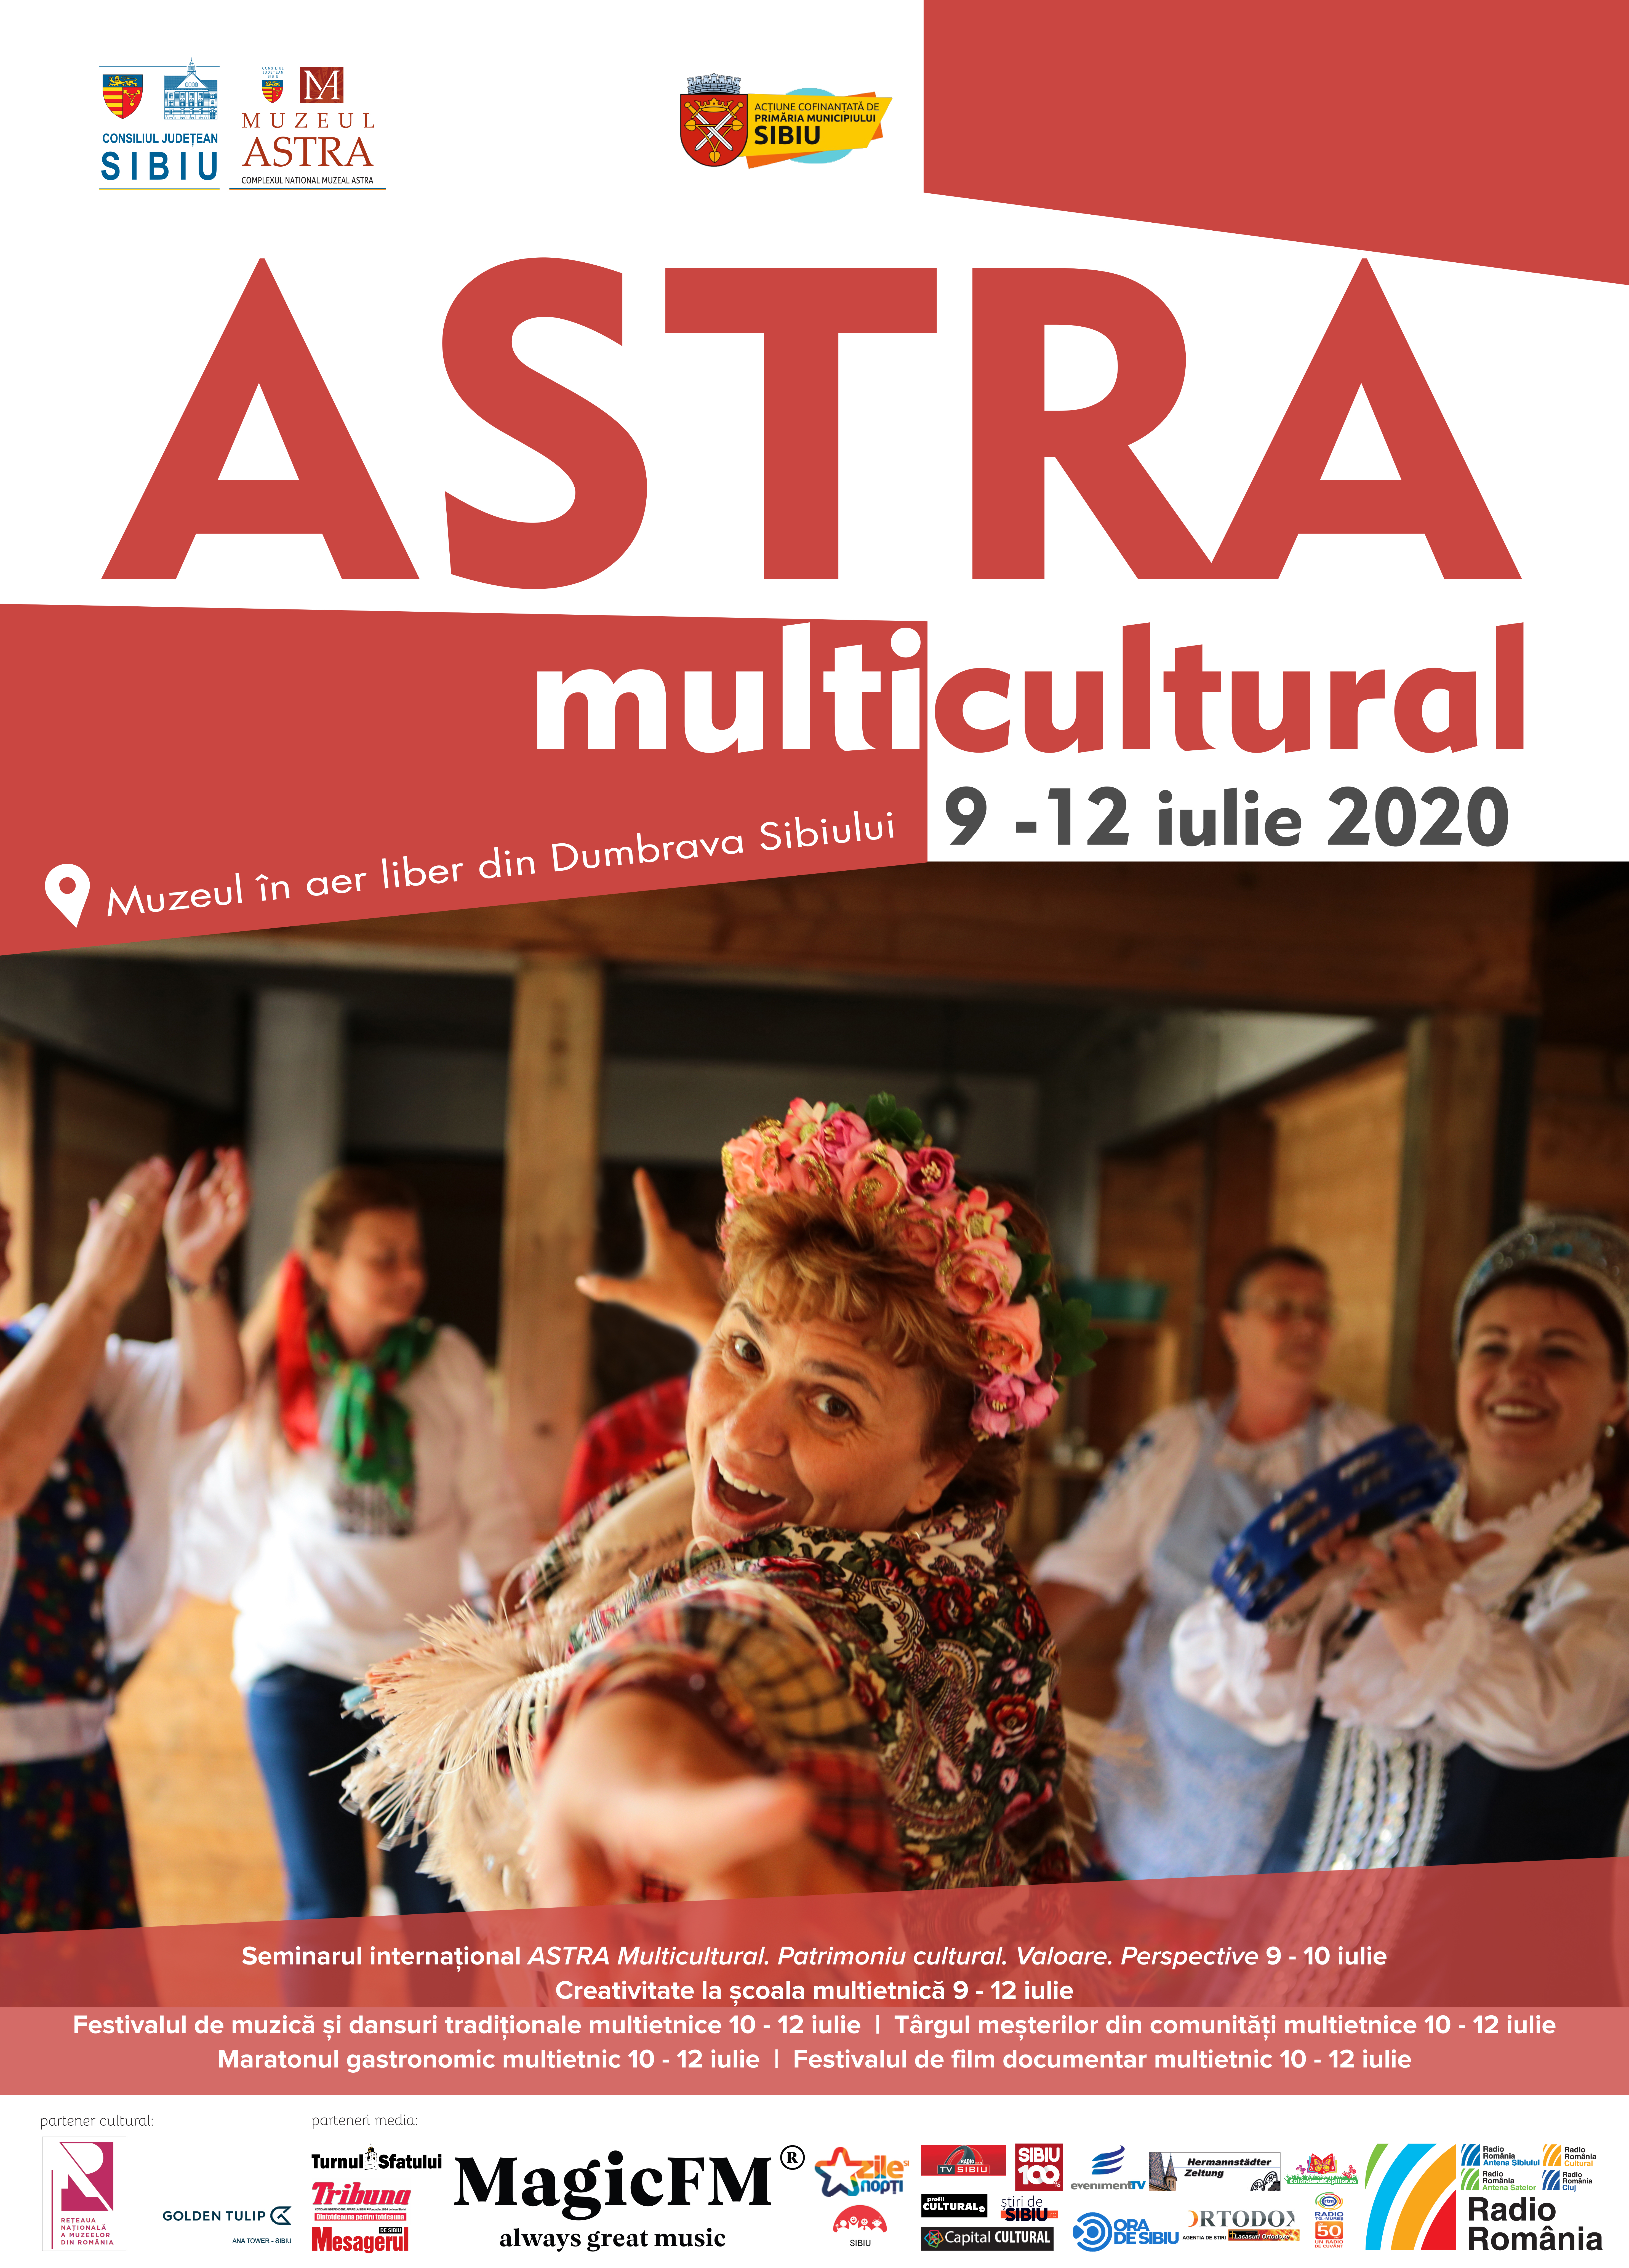 ASTRA-uniți prin cultură! este deviza evenimentului ASTRA Multicultural